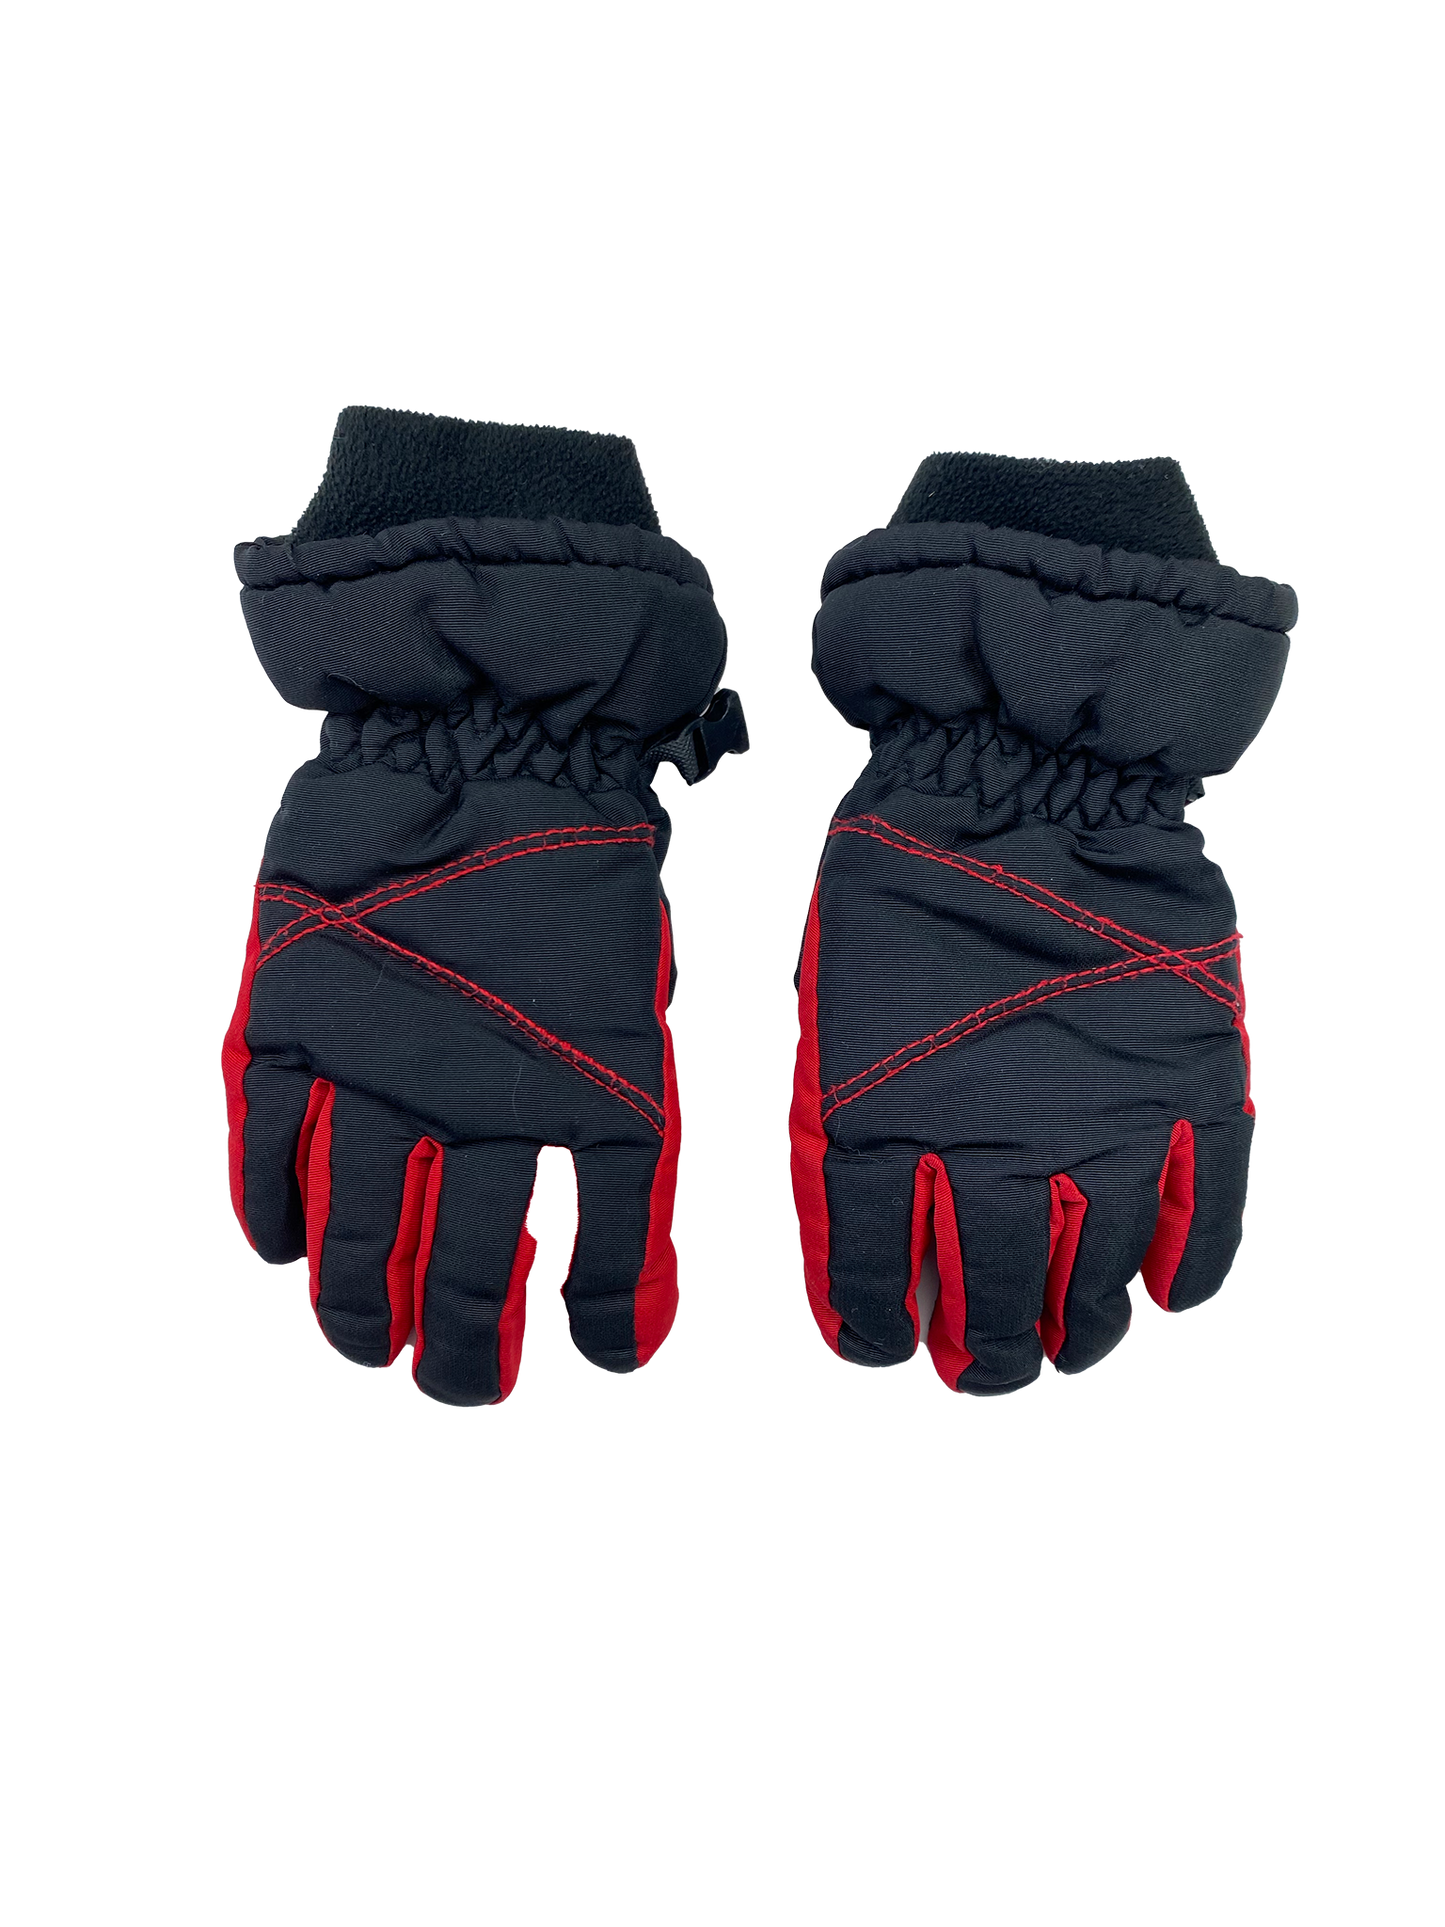 George Black & Red Gloves 4-6X